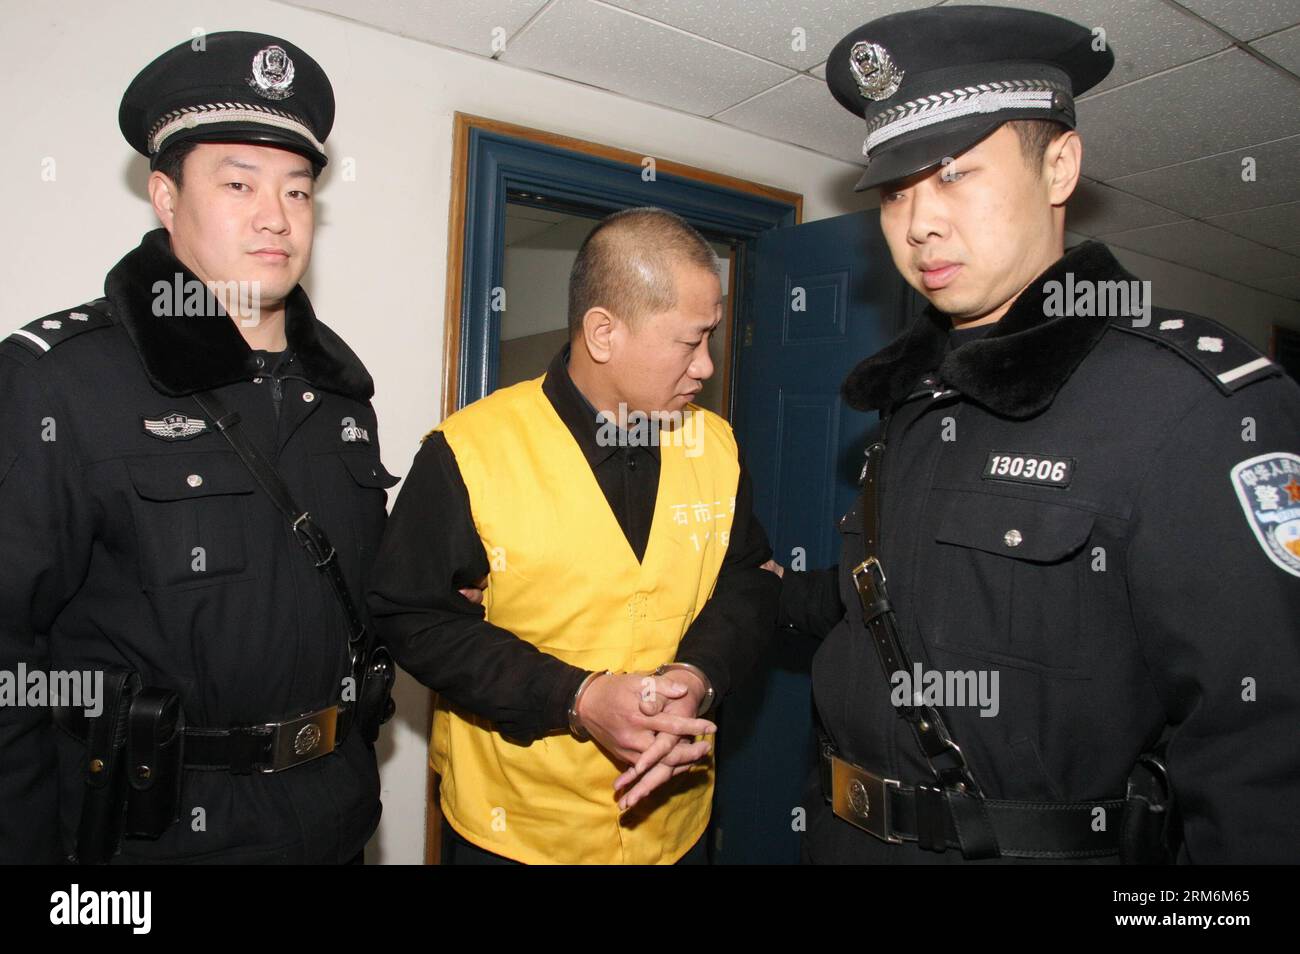 (140120) -- SHIJIAZHUANG, 20 janvier 2014 (Xinhua) -- Lyu Yueting (C) est escorté à son procès devant le tribunal populaire intermédiaire municipal de Shijiazhuang à Shijiazhuang, capitale de la province du Hebei du nord de la Chine, le 20 janvier 2014. LYU a été condamné à la prison à vie pour avoir ajouté du poison à des boulettes congelées qui ont laissé malades quatre Chinois et neuf Japonais. Le tribunal populaire intermédiaire municipal de Shijiazhuang a rendu le verdict lundi lors d'une audience publique en présence de journalistes et de fonctionnaires de l'ambassade du Japon en Chine. (Xinhua/Ding Lixin) (lmm) CHINA-SHIJIAZHUANG-DUMPLING Banque D'Images